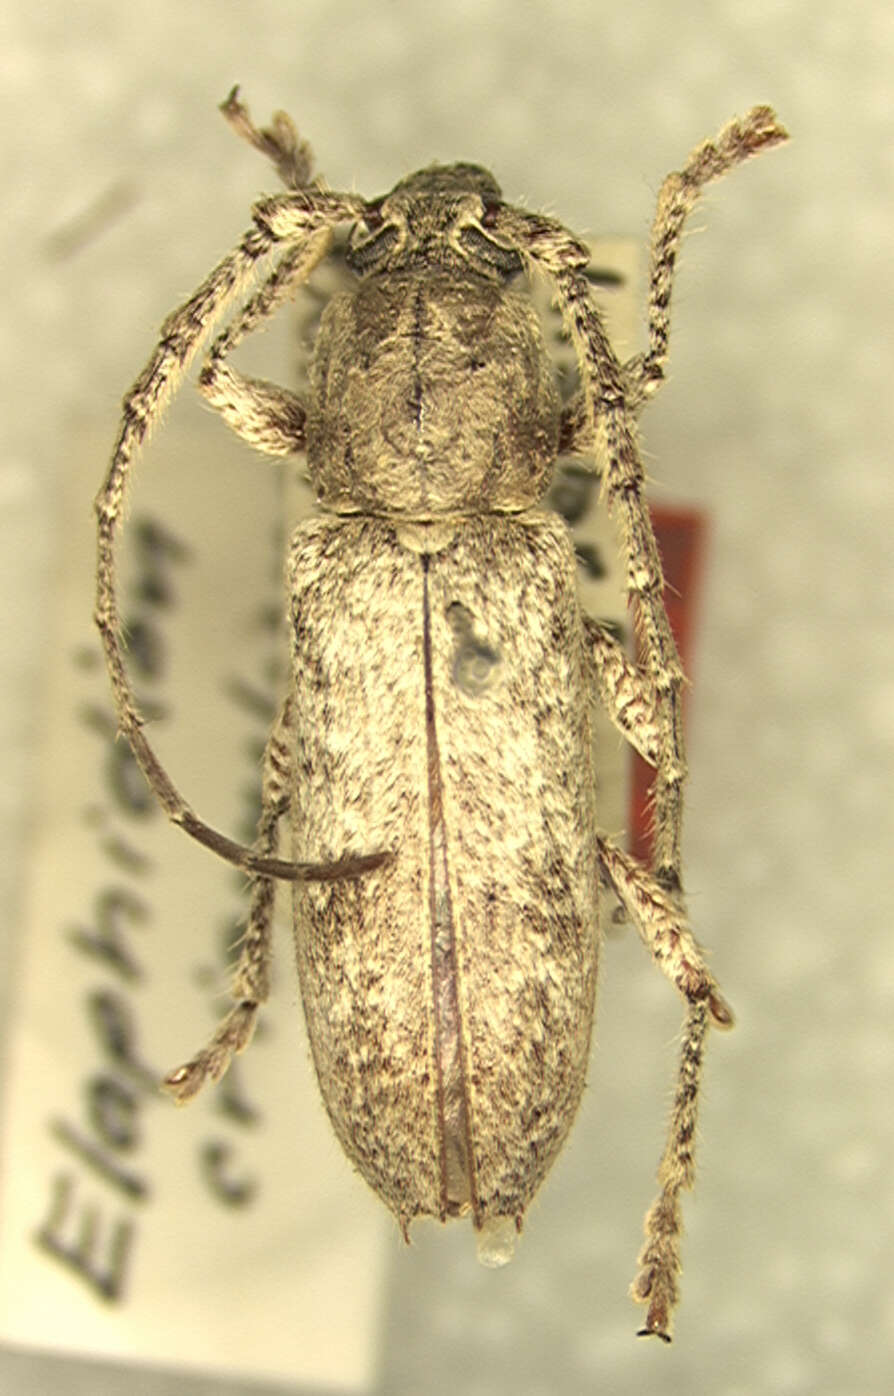 Anelaphus crispulus (Fisher 1947) resmi